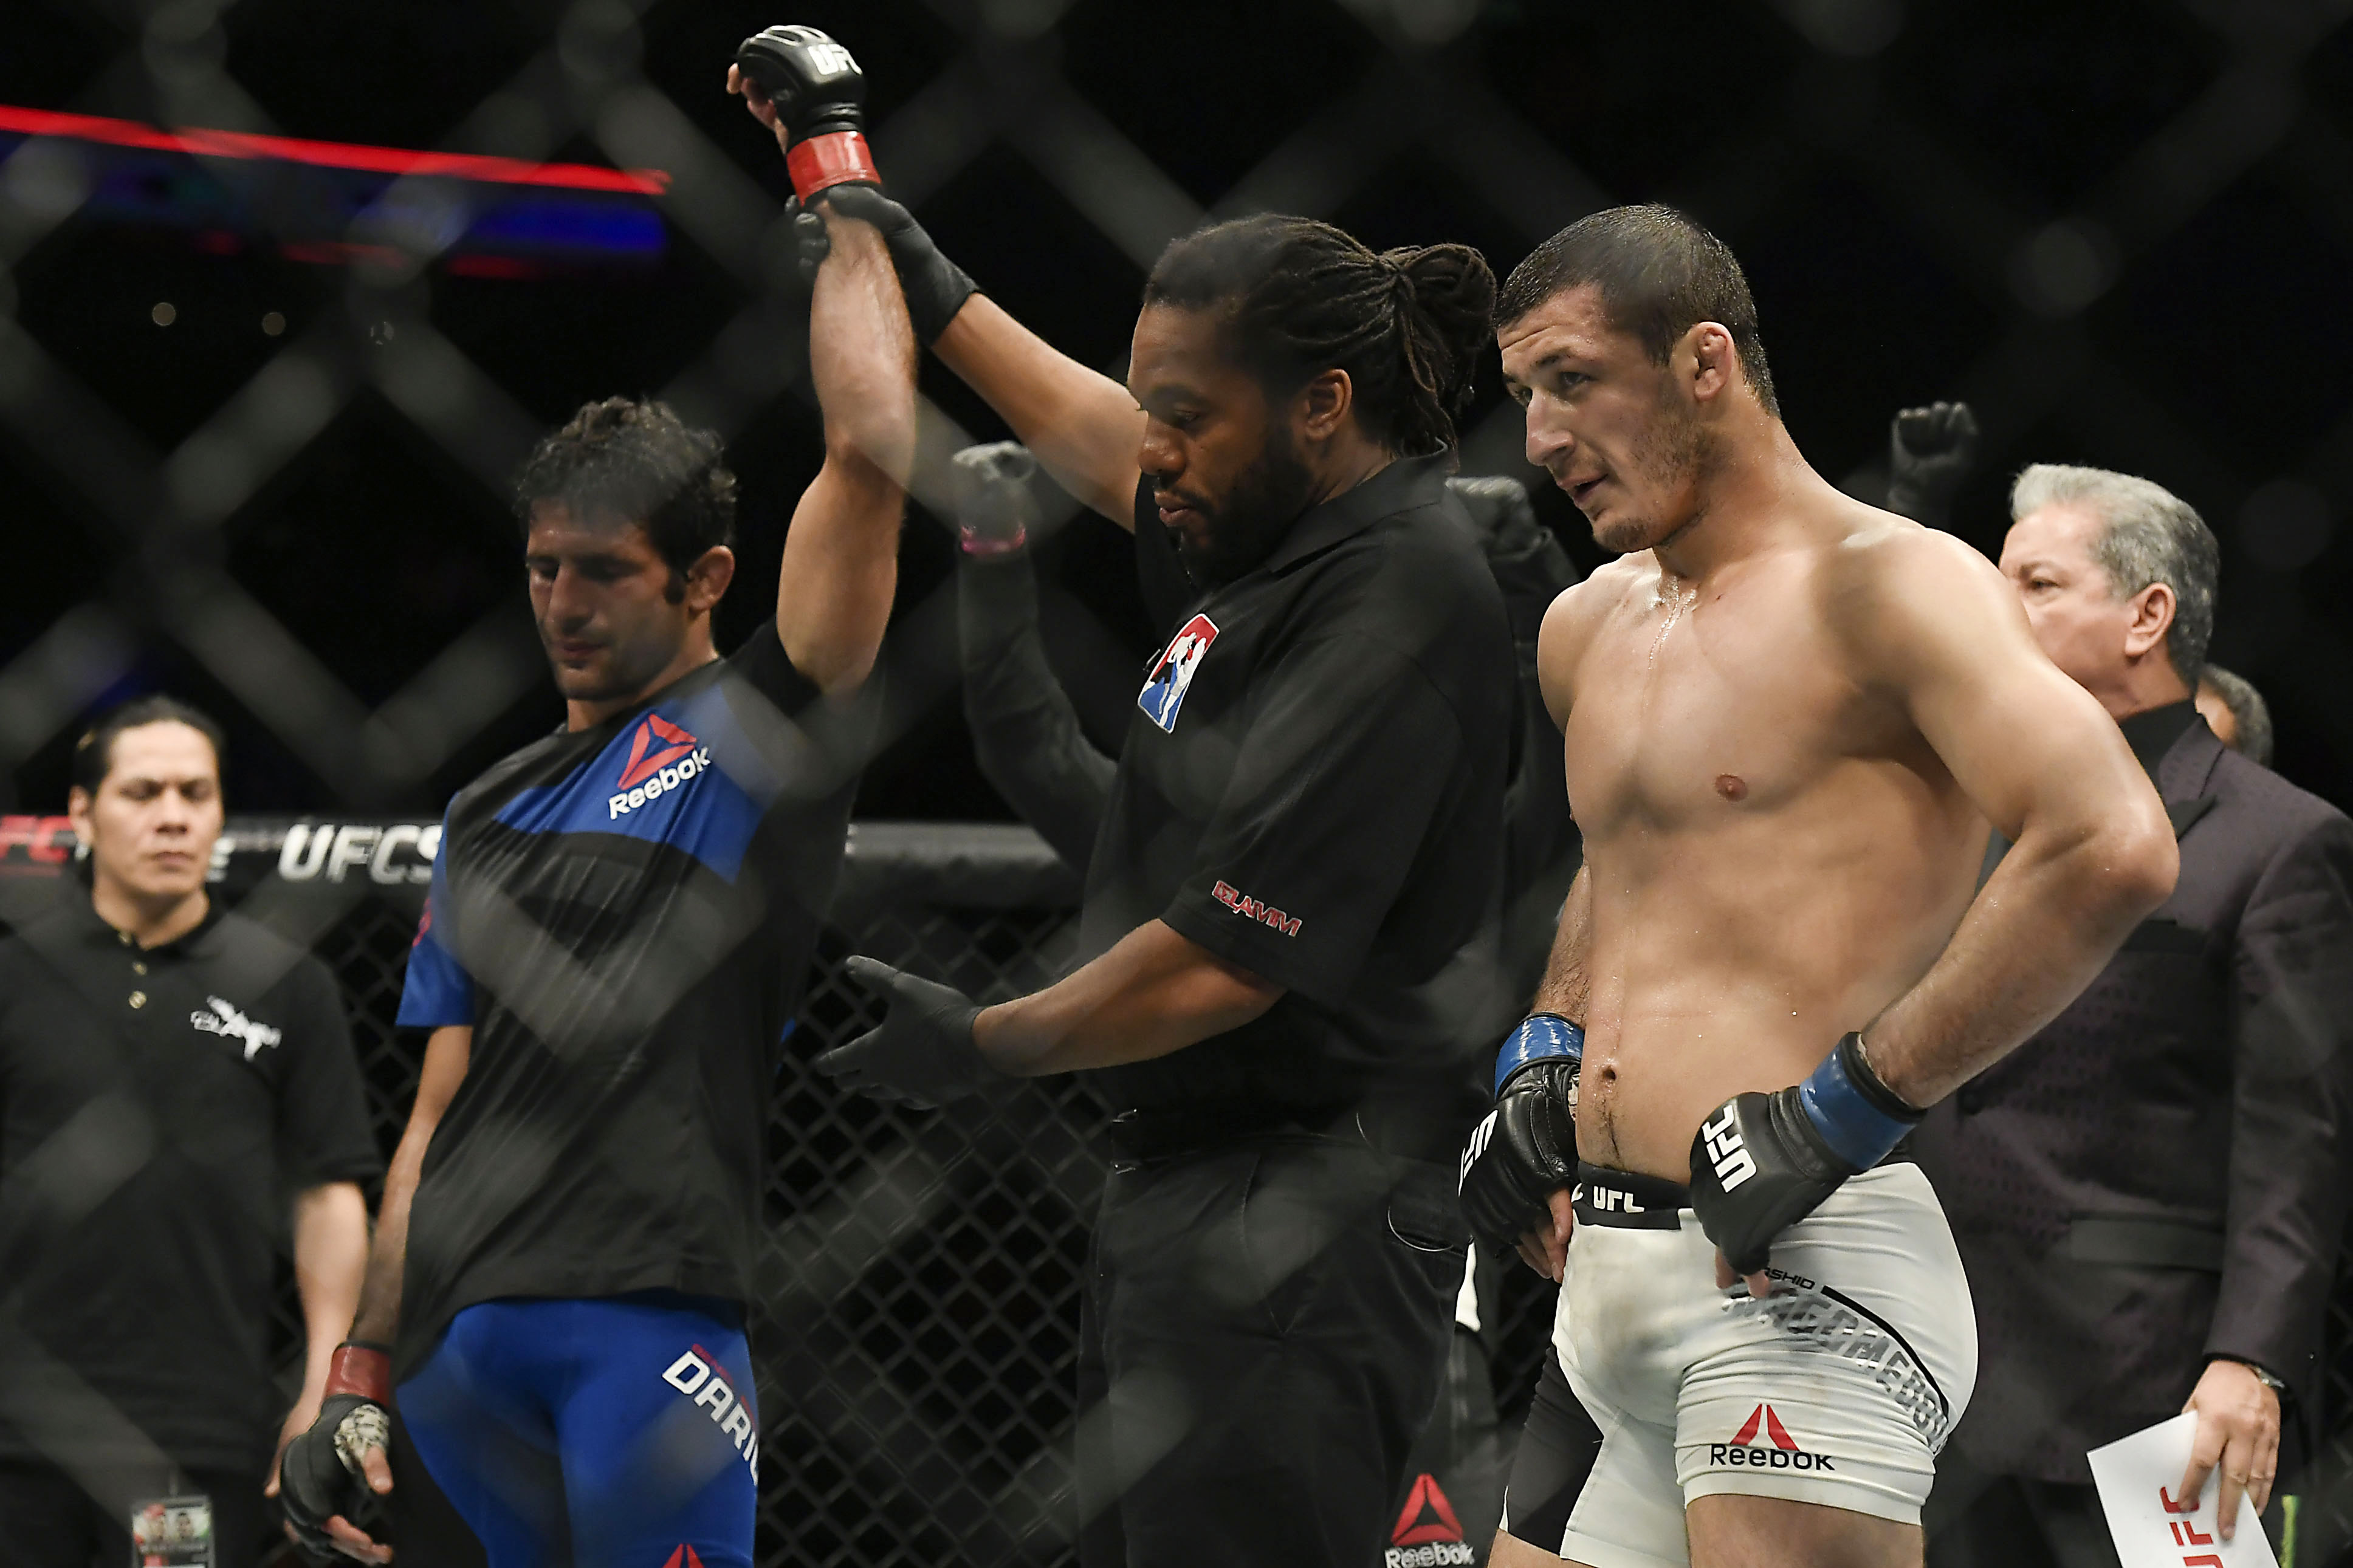 MMA: UFC Fight Night-Dariush vs Magomedov